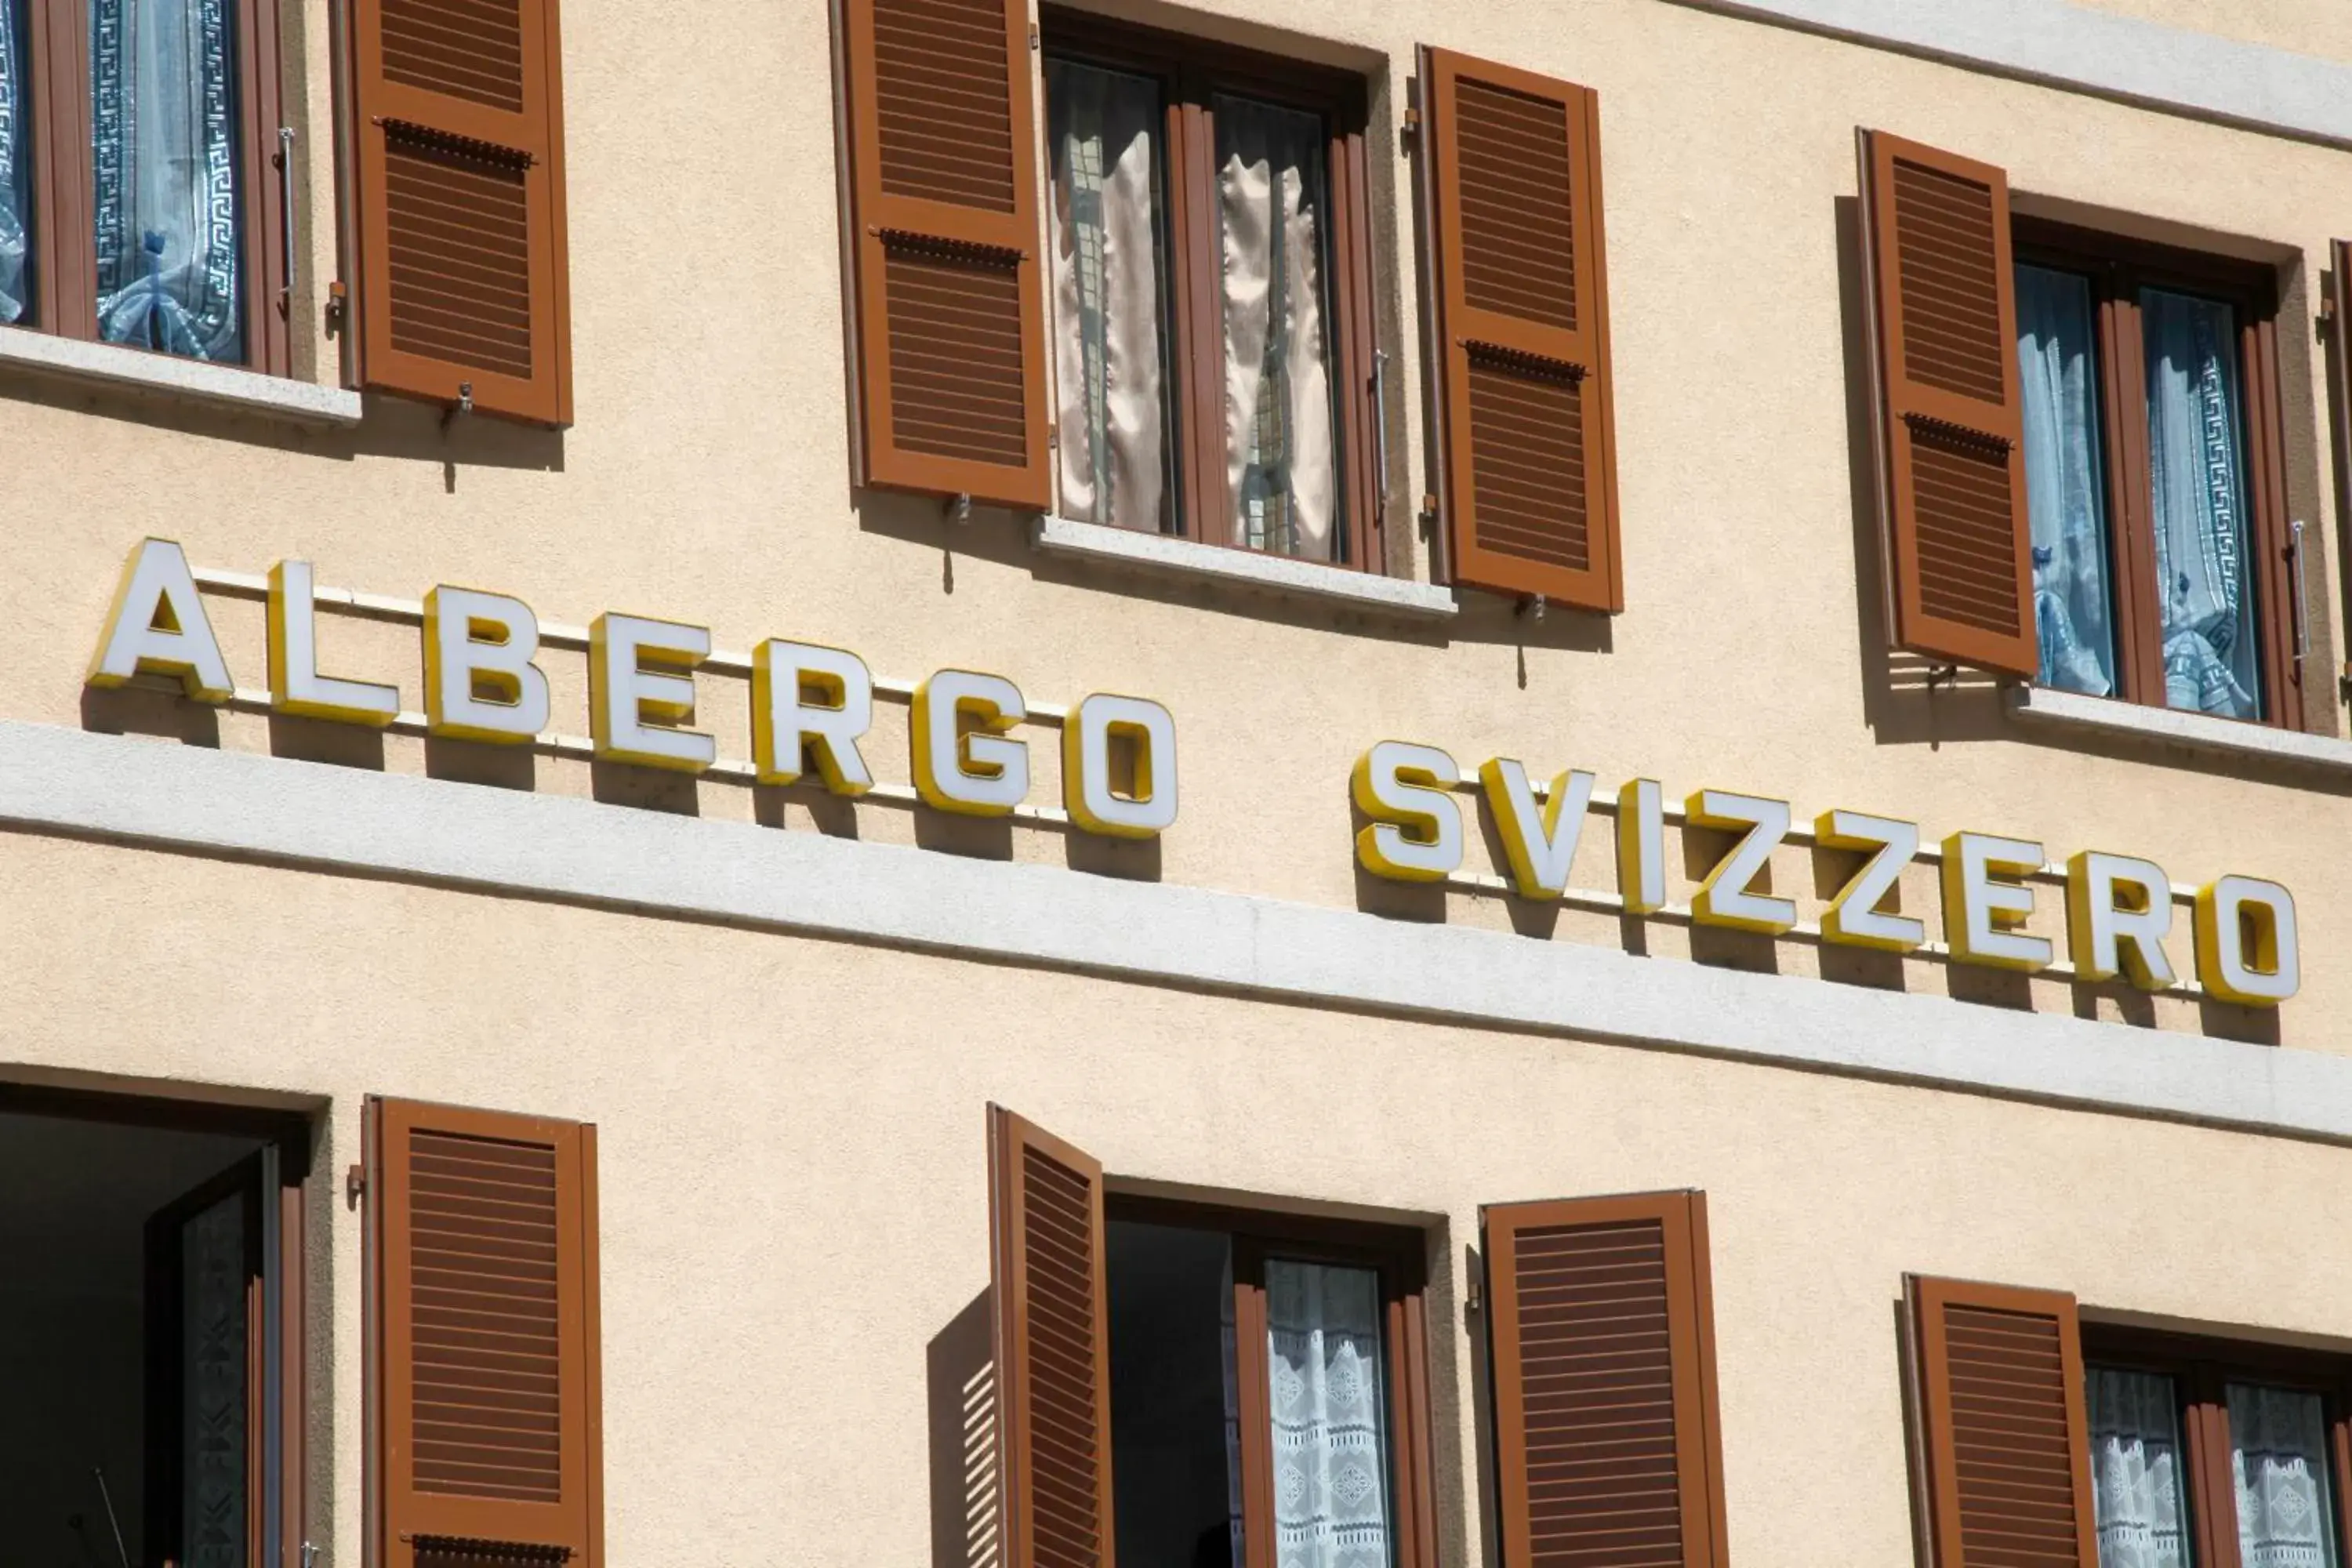 Facade/entrance, Property Building in Albergo Ristorante Svizzero